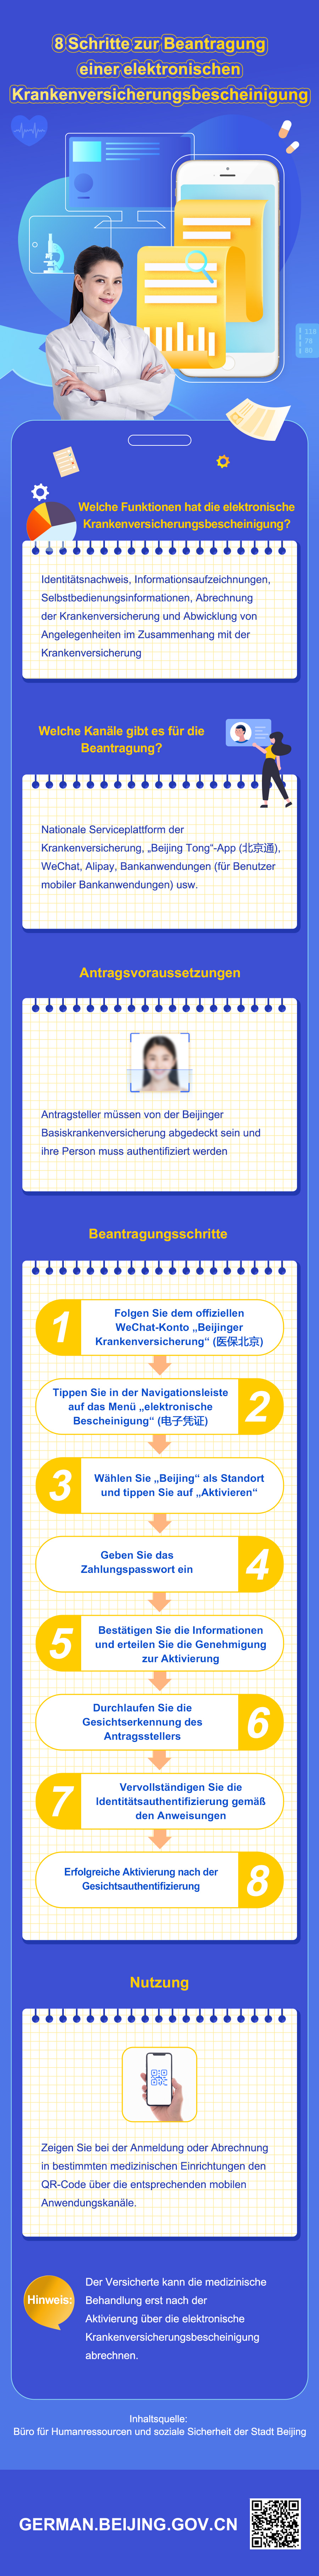 8个步骤申领医保电子凭证-德语.jpg